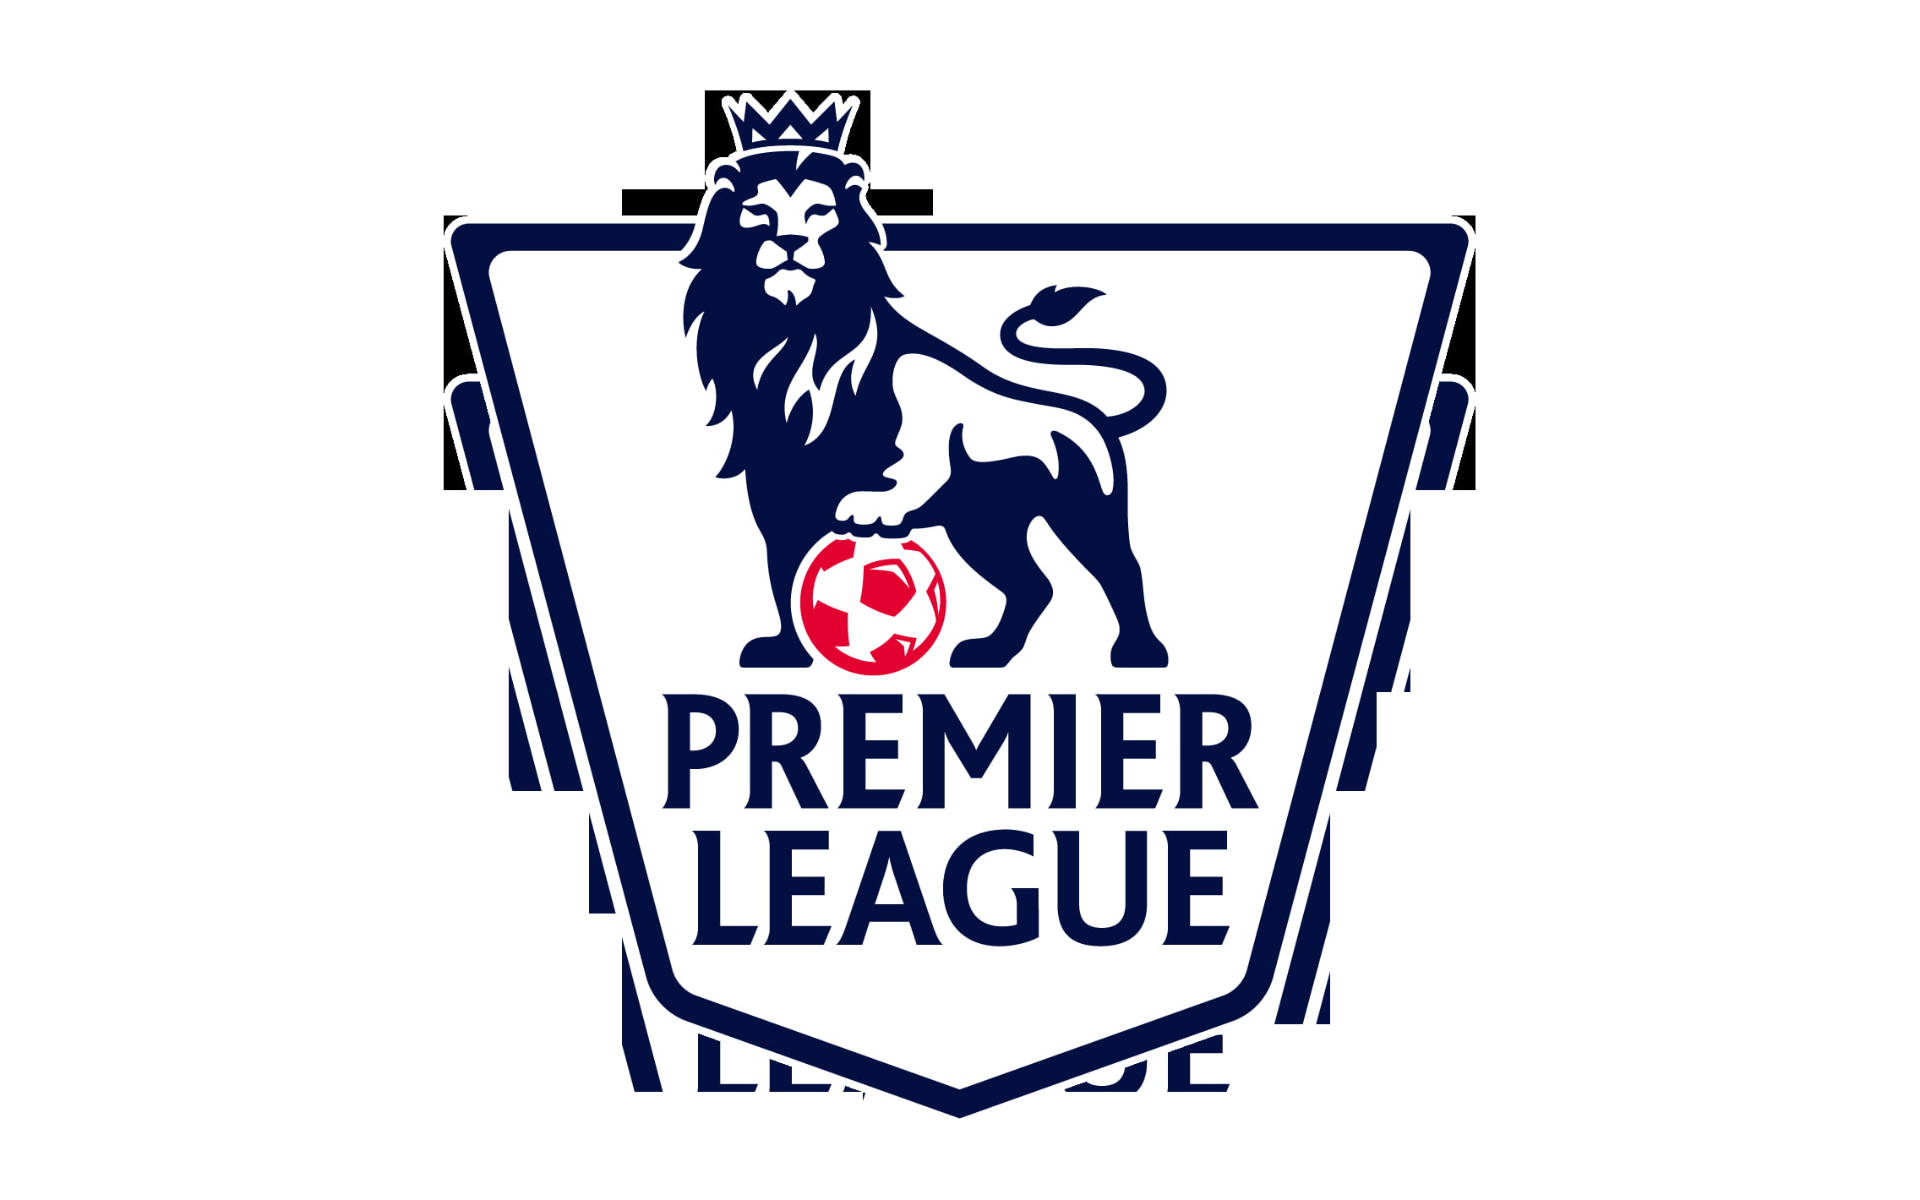 Premier League Emblem In White Wallpaper